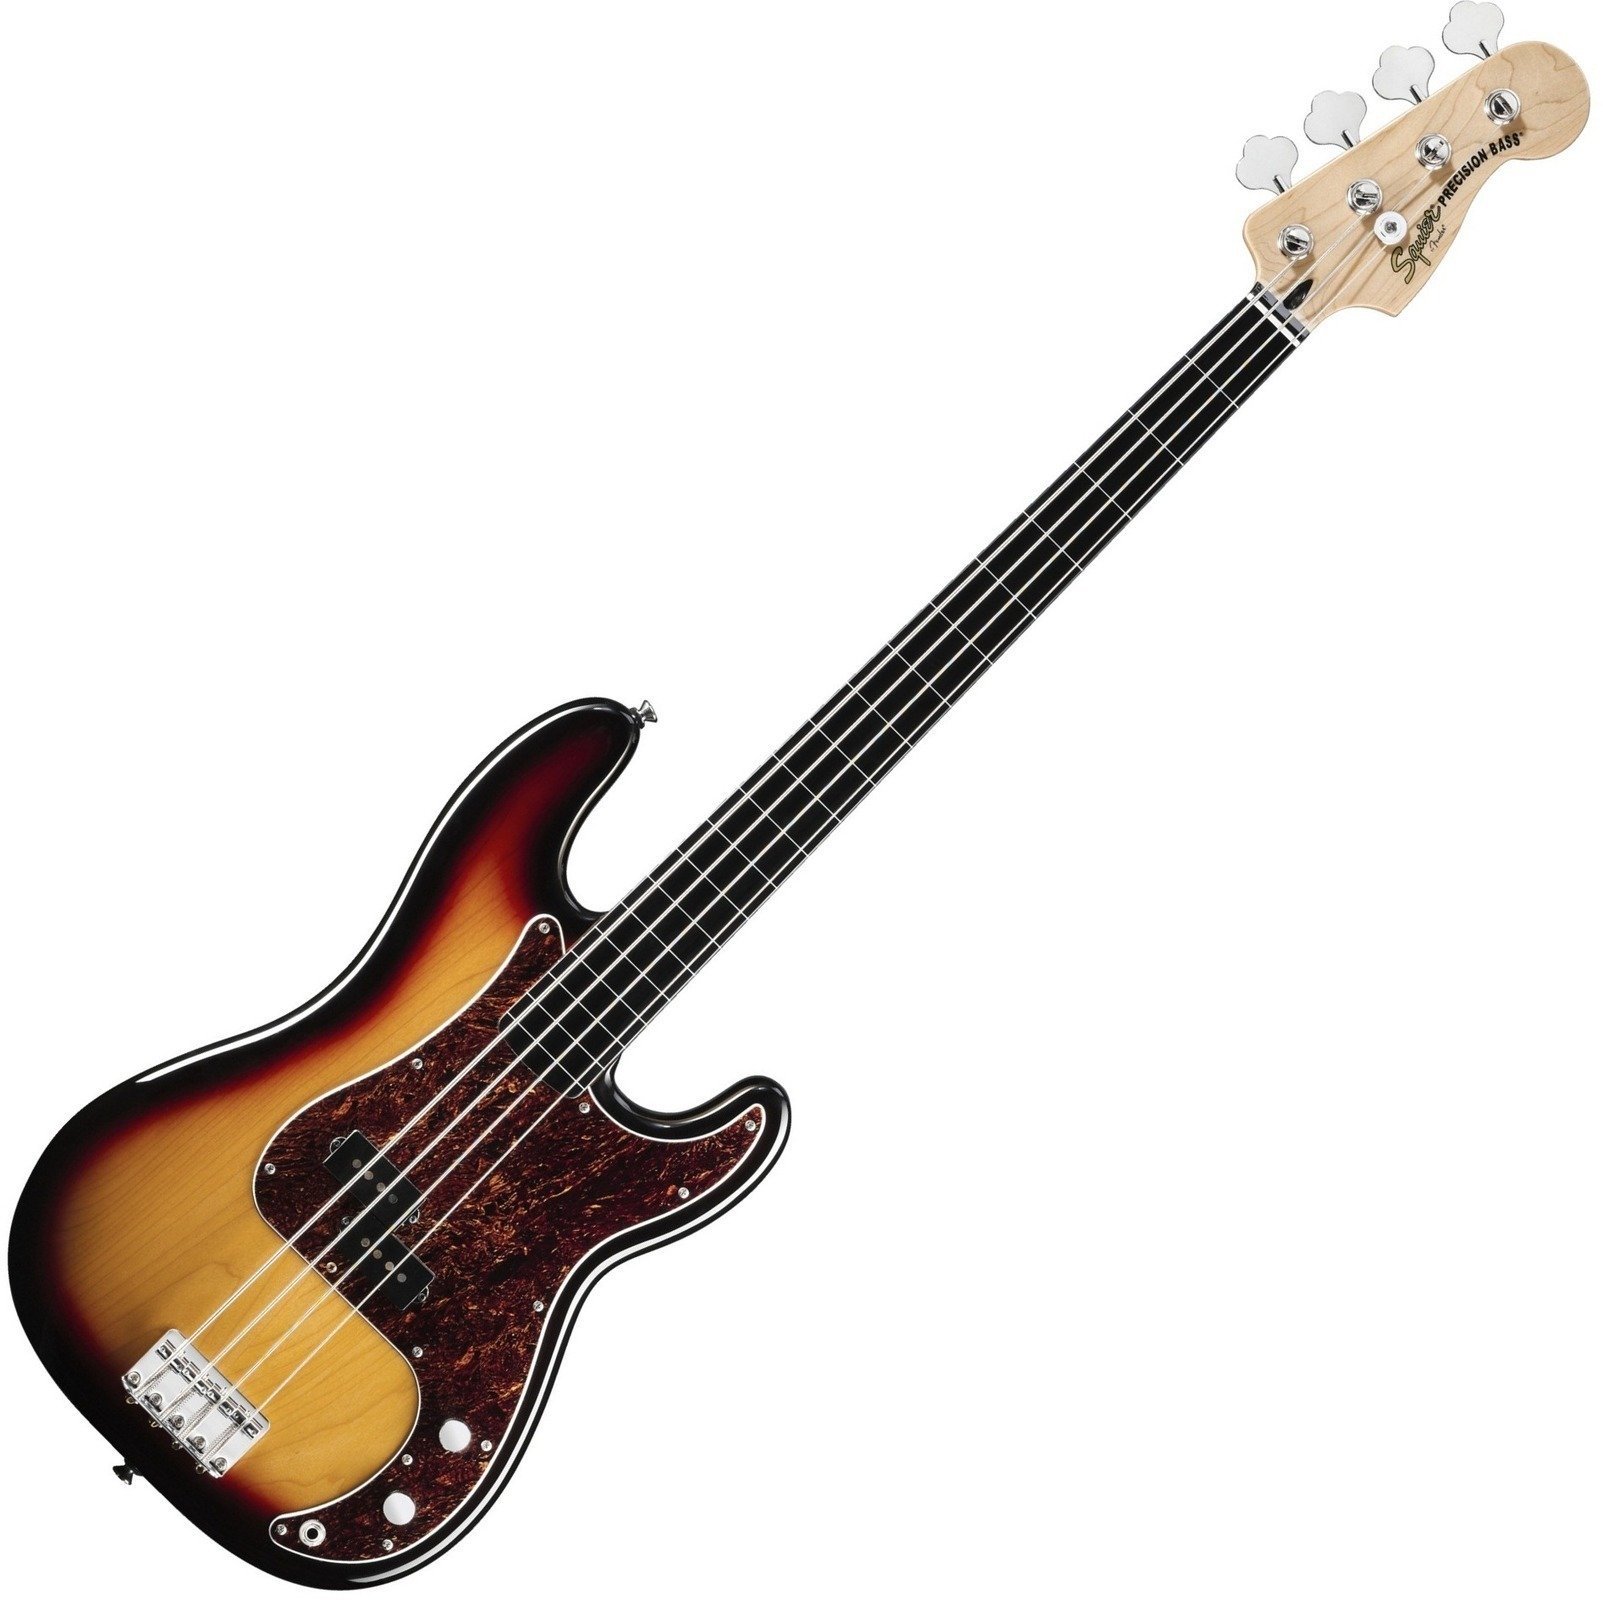 Fretless basszusgitár Fender Squier Vintage Modified Precision Bass Fretless 3 Color Sunburst